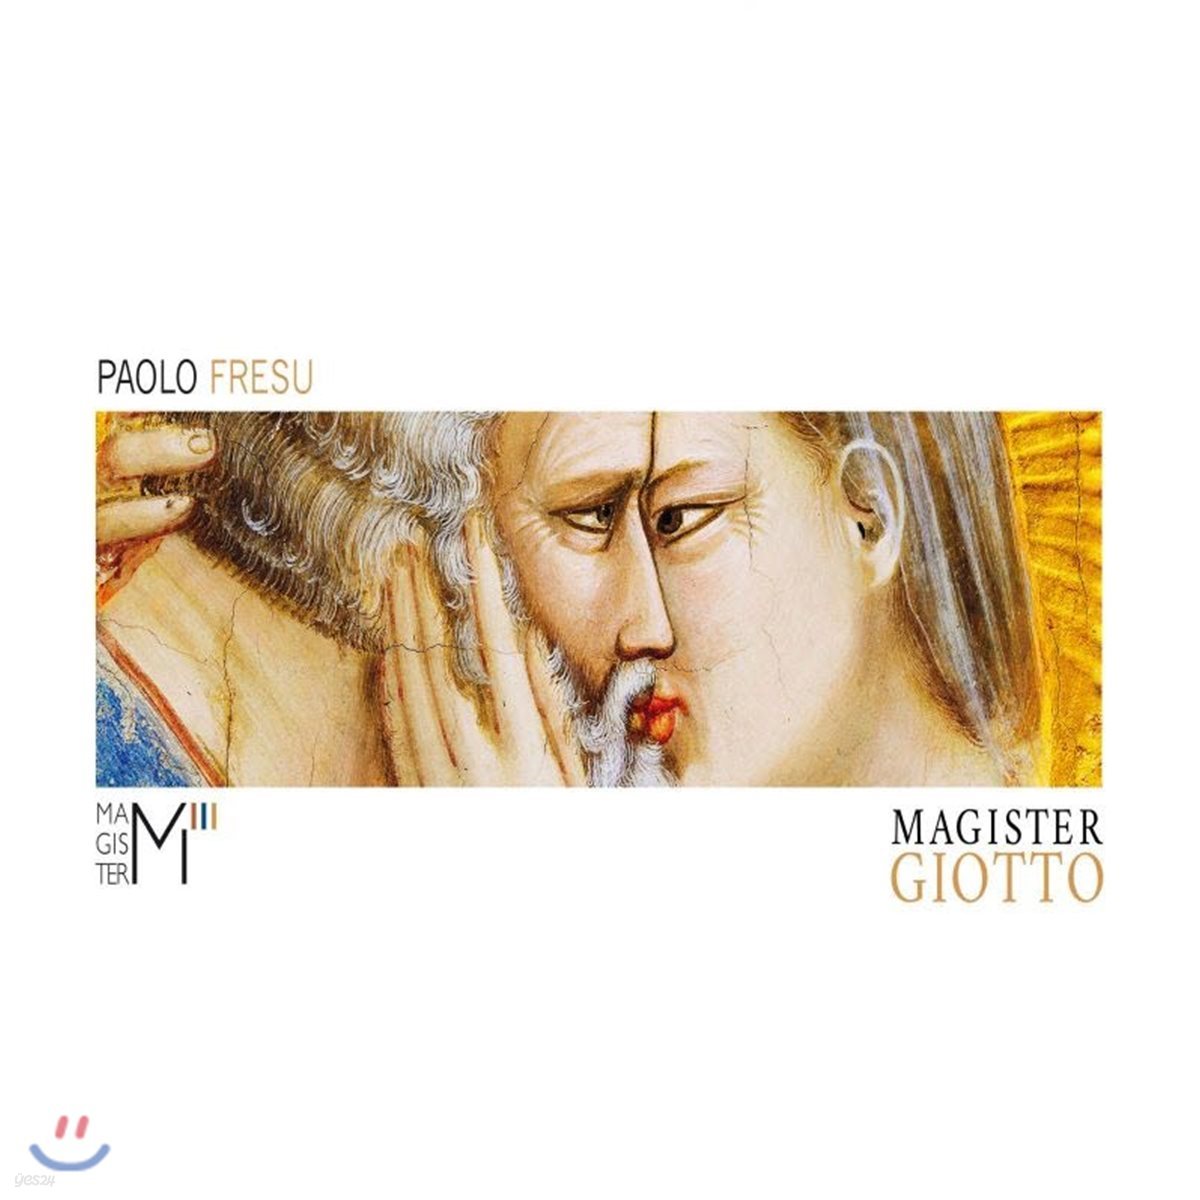 Paolo Fresu - Magister Giotto 파올로 프레수 2017 지오토 베네치아 전시회 기념 앨범 스페셜 팩키지